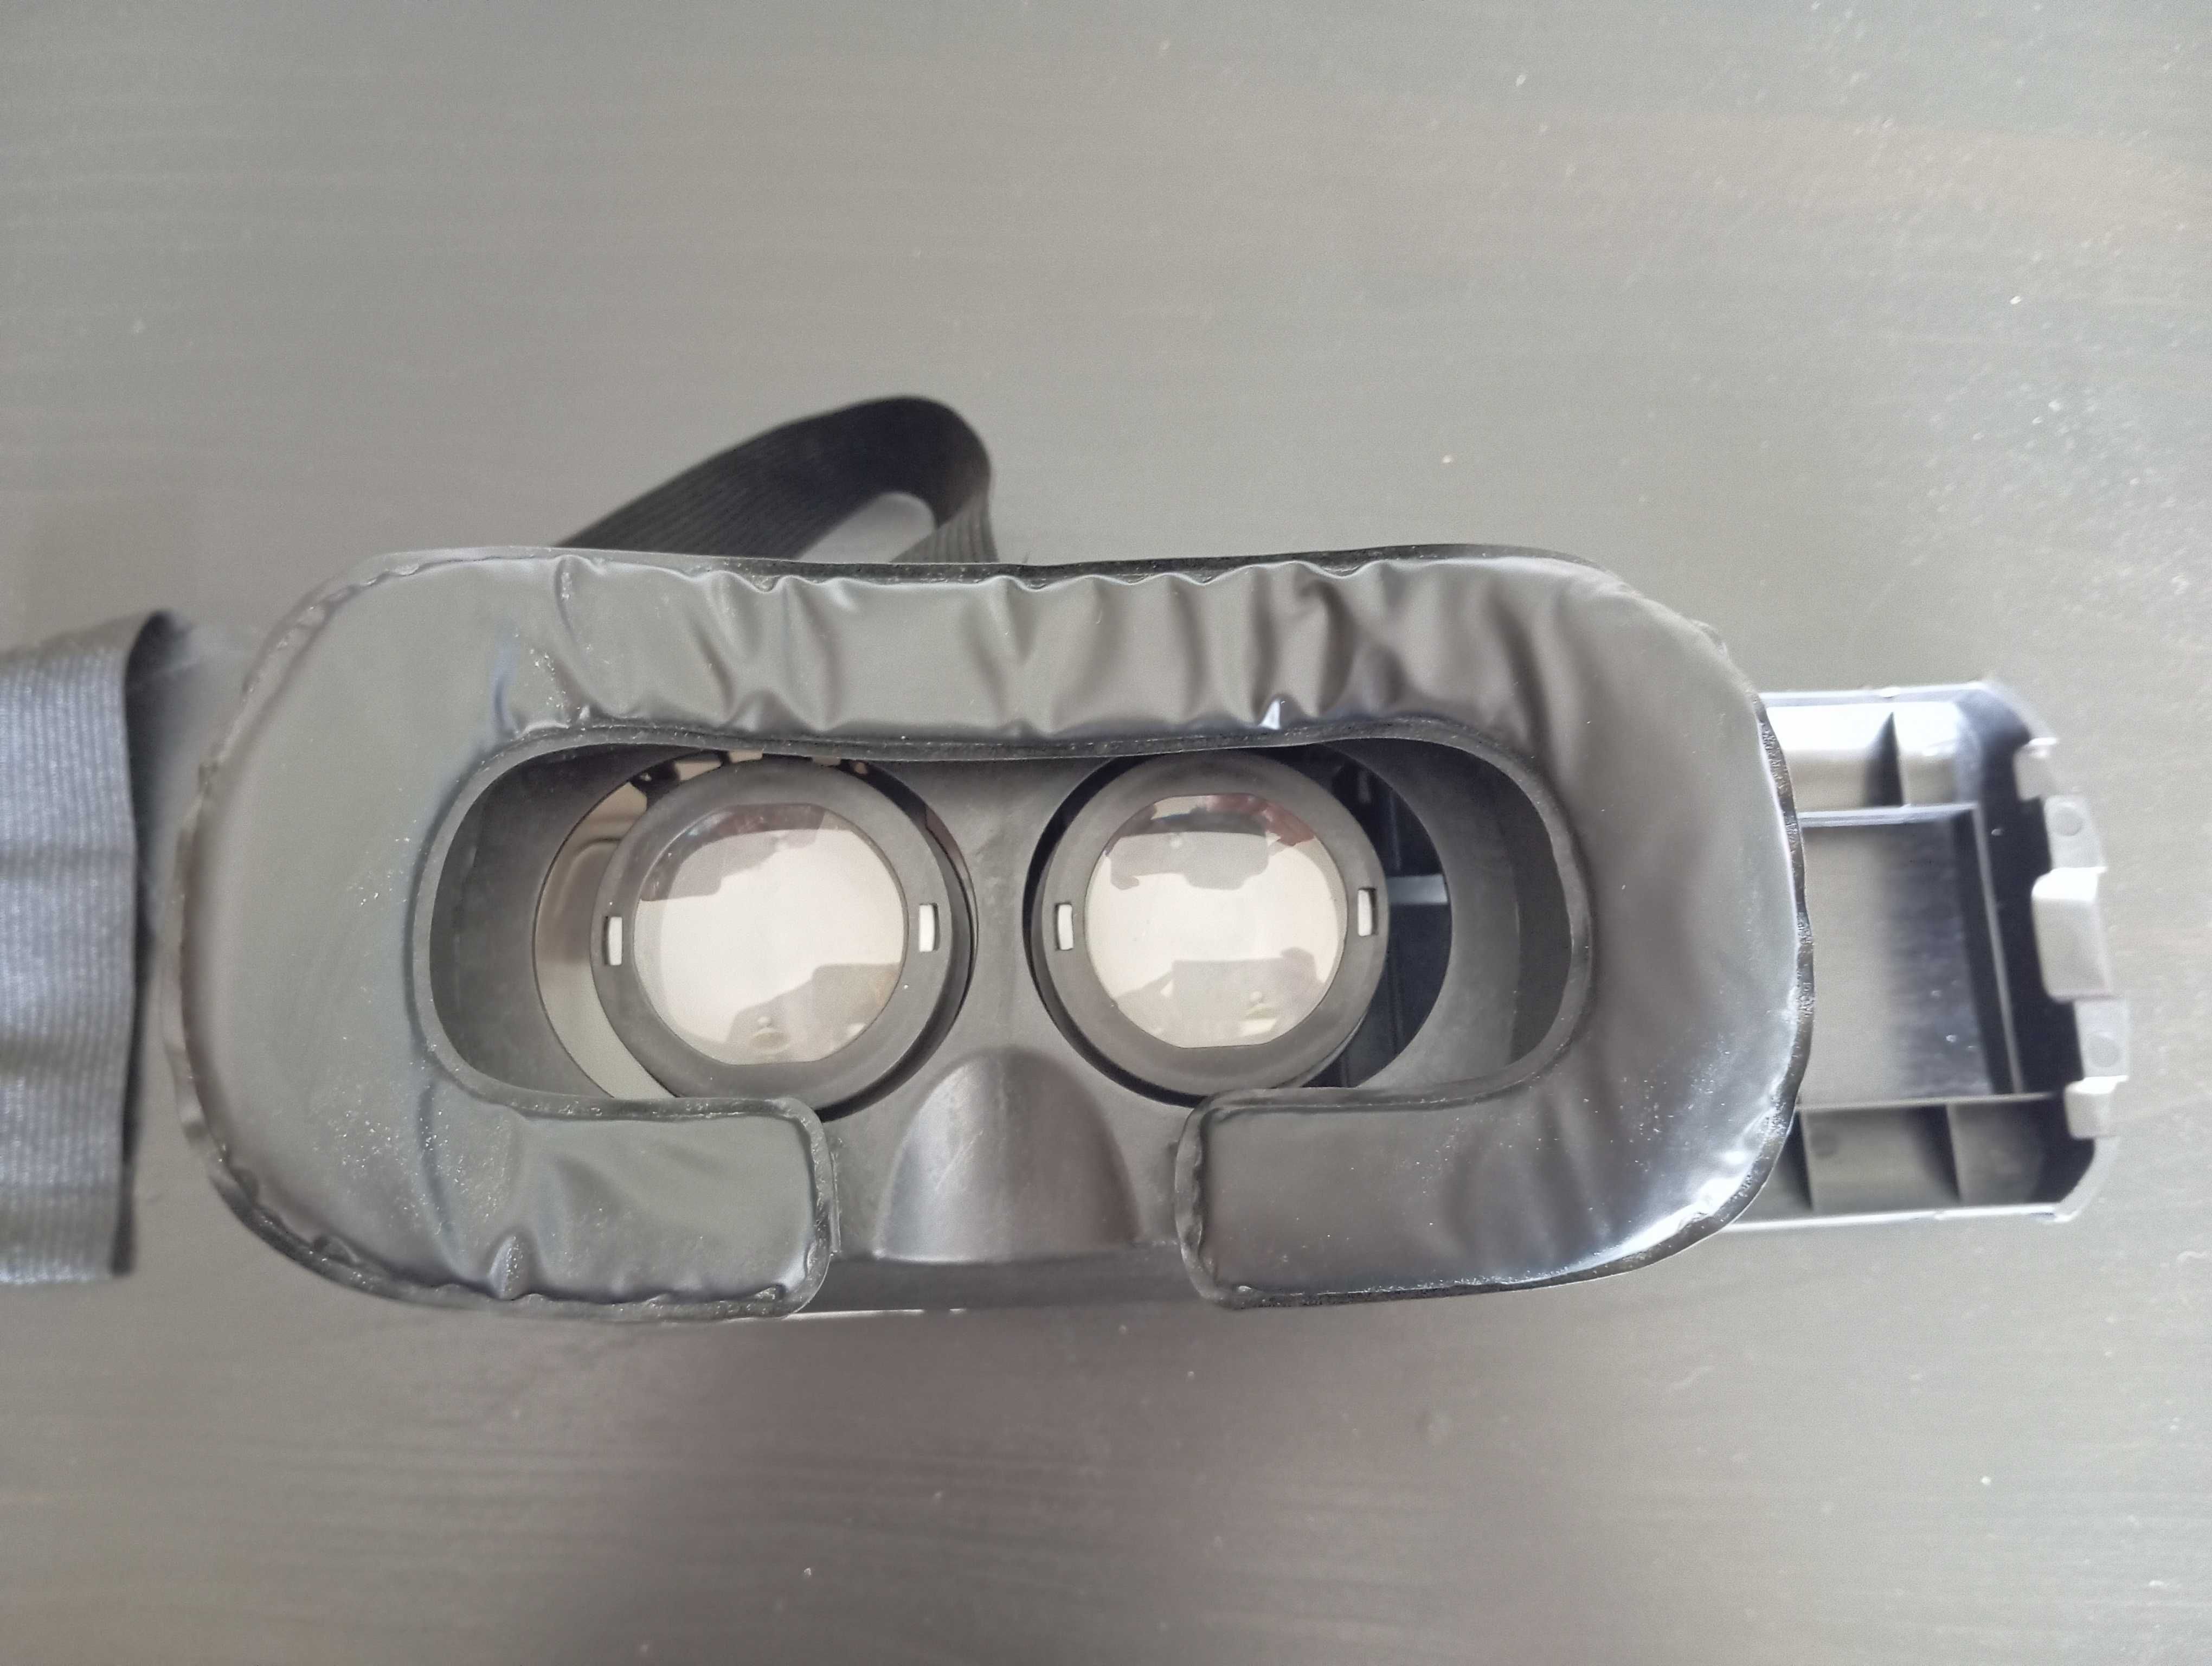 Óculos de realidade virtual - VR Box